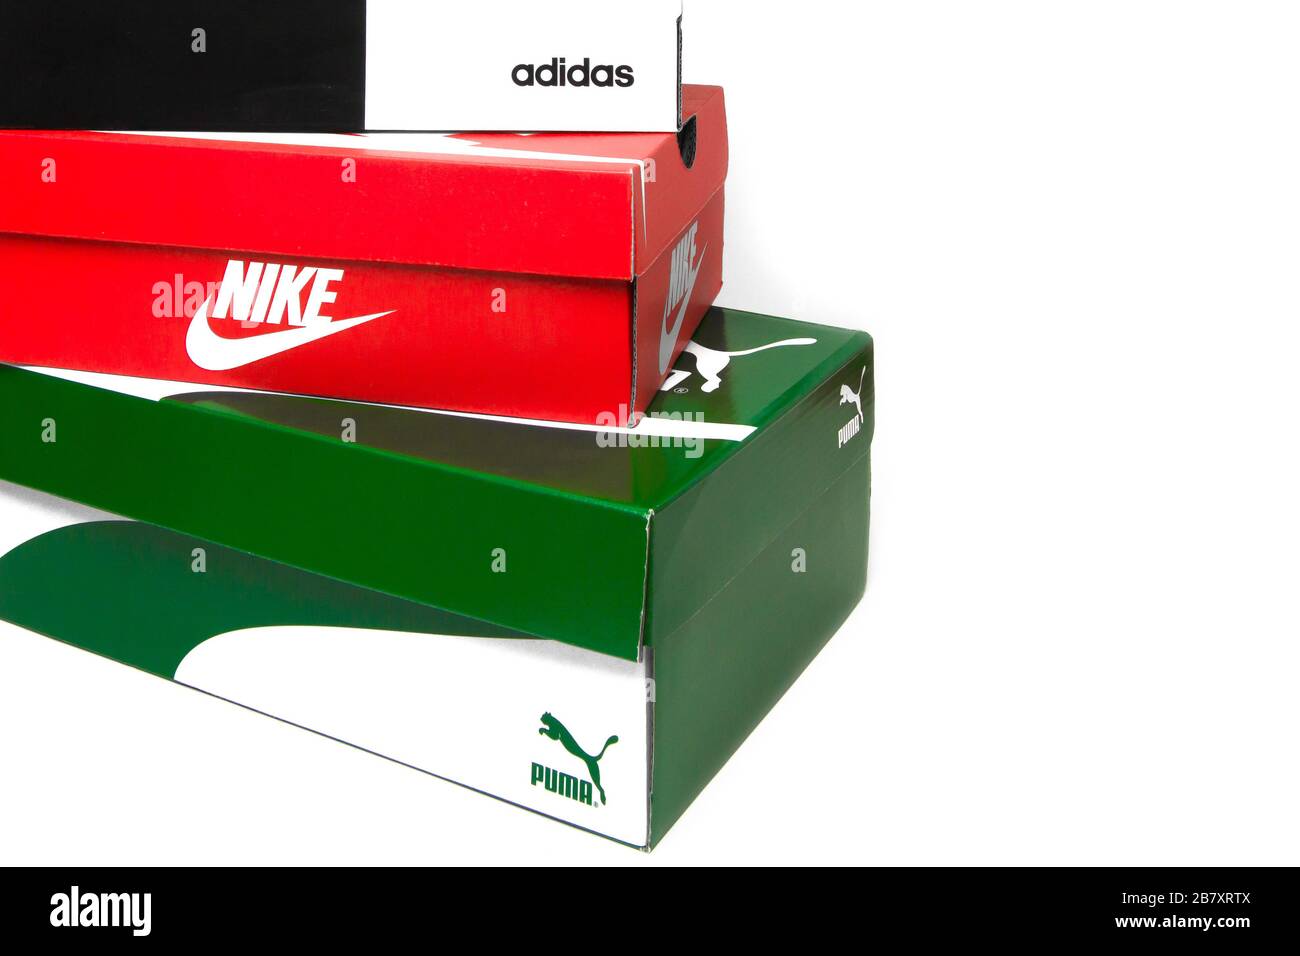 La boîte à chaussures Puma est isolée sur un fond blanc. Boîte verte avec  rayures blanches pour la culotte. San Francisco, États-Unis, mars 2020  Photo Stock - Alamy